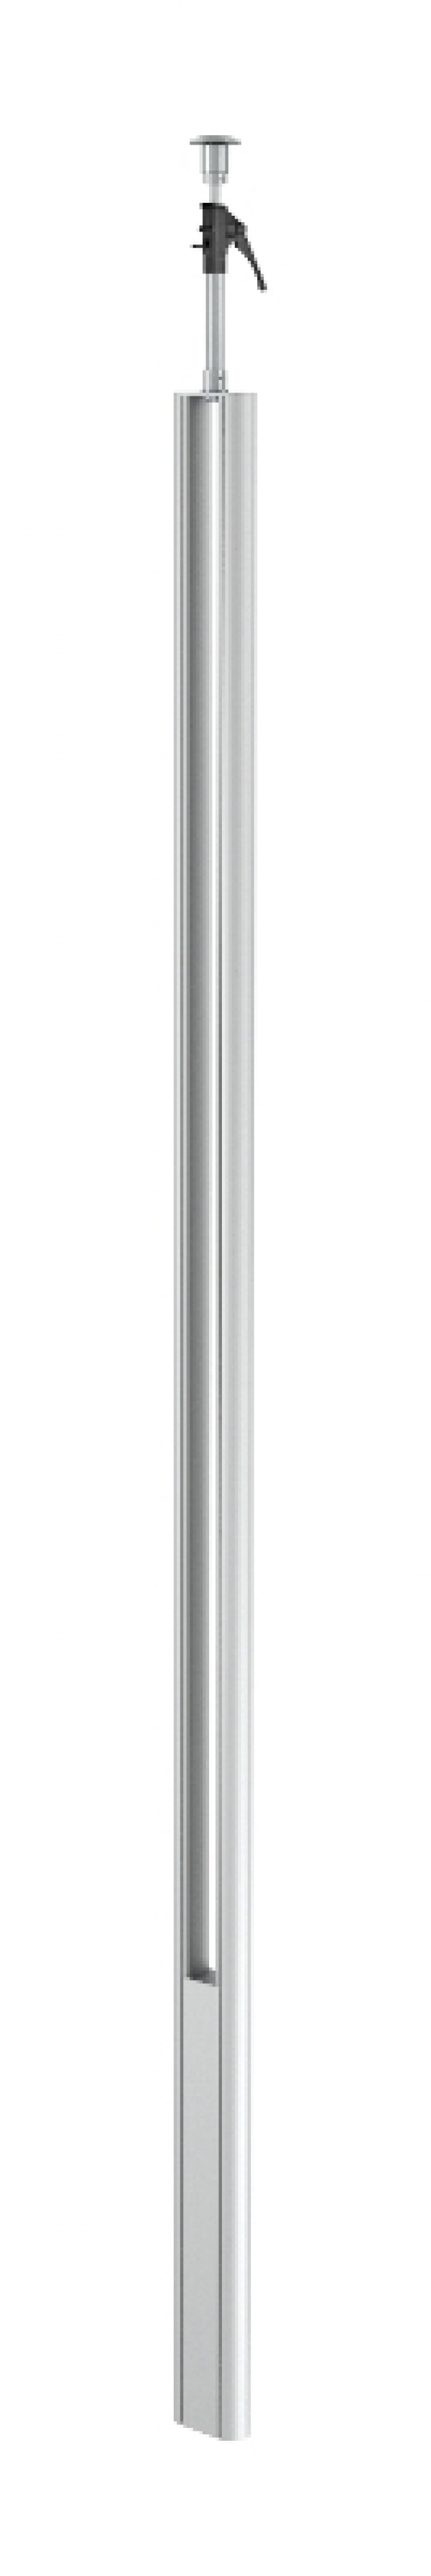 6288930 - OBO BETTERMANN Электромонтажная колонна 3,3-3,5 м 1-сторонняя 64x145x3000 мм (алюминий,белый) (ISST70140RW).